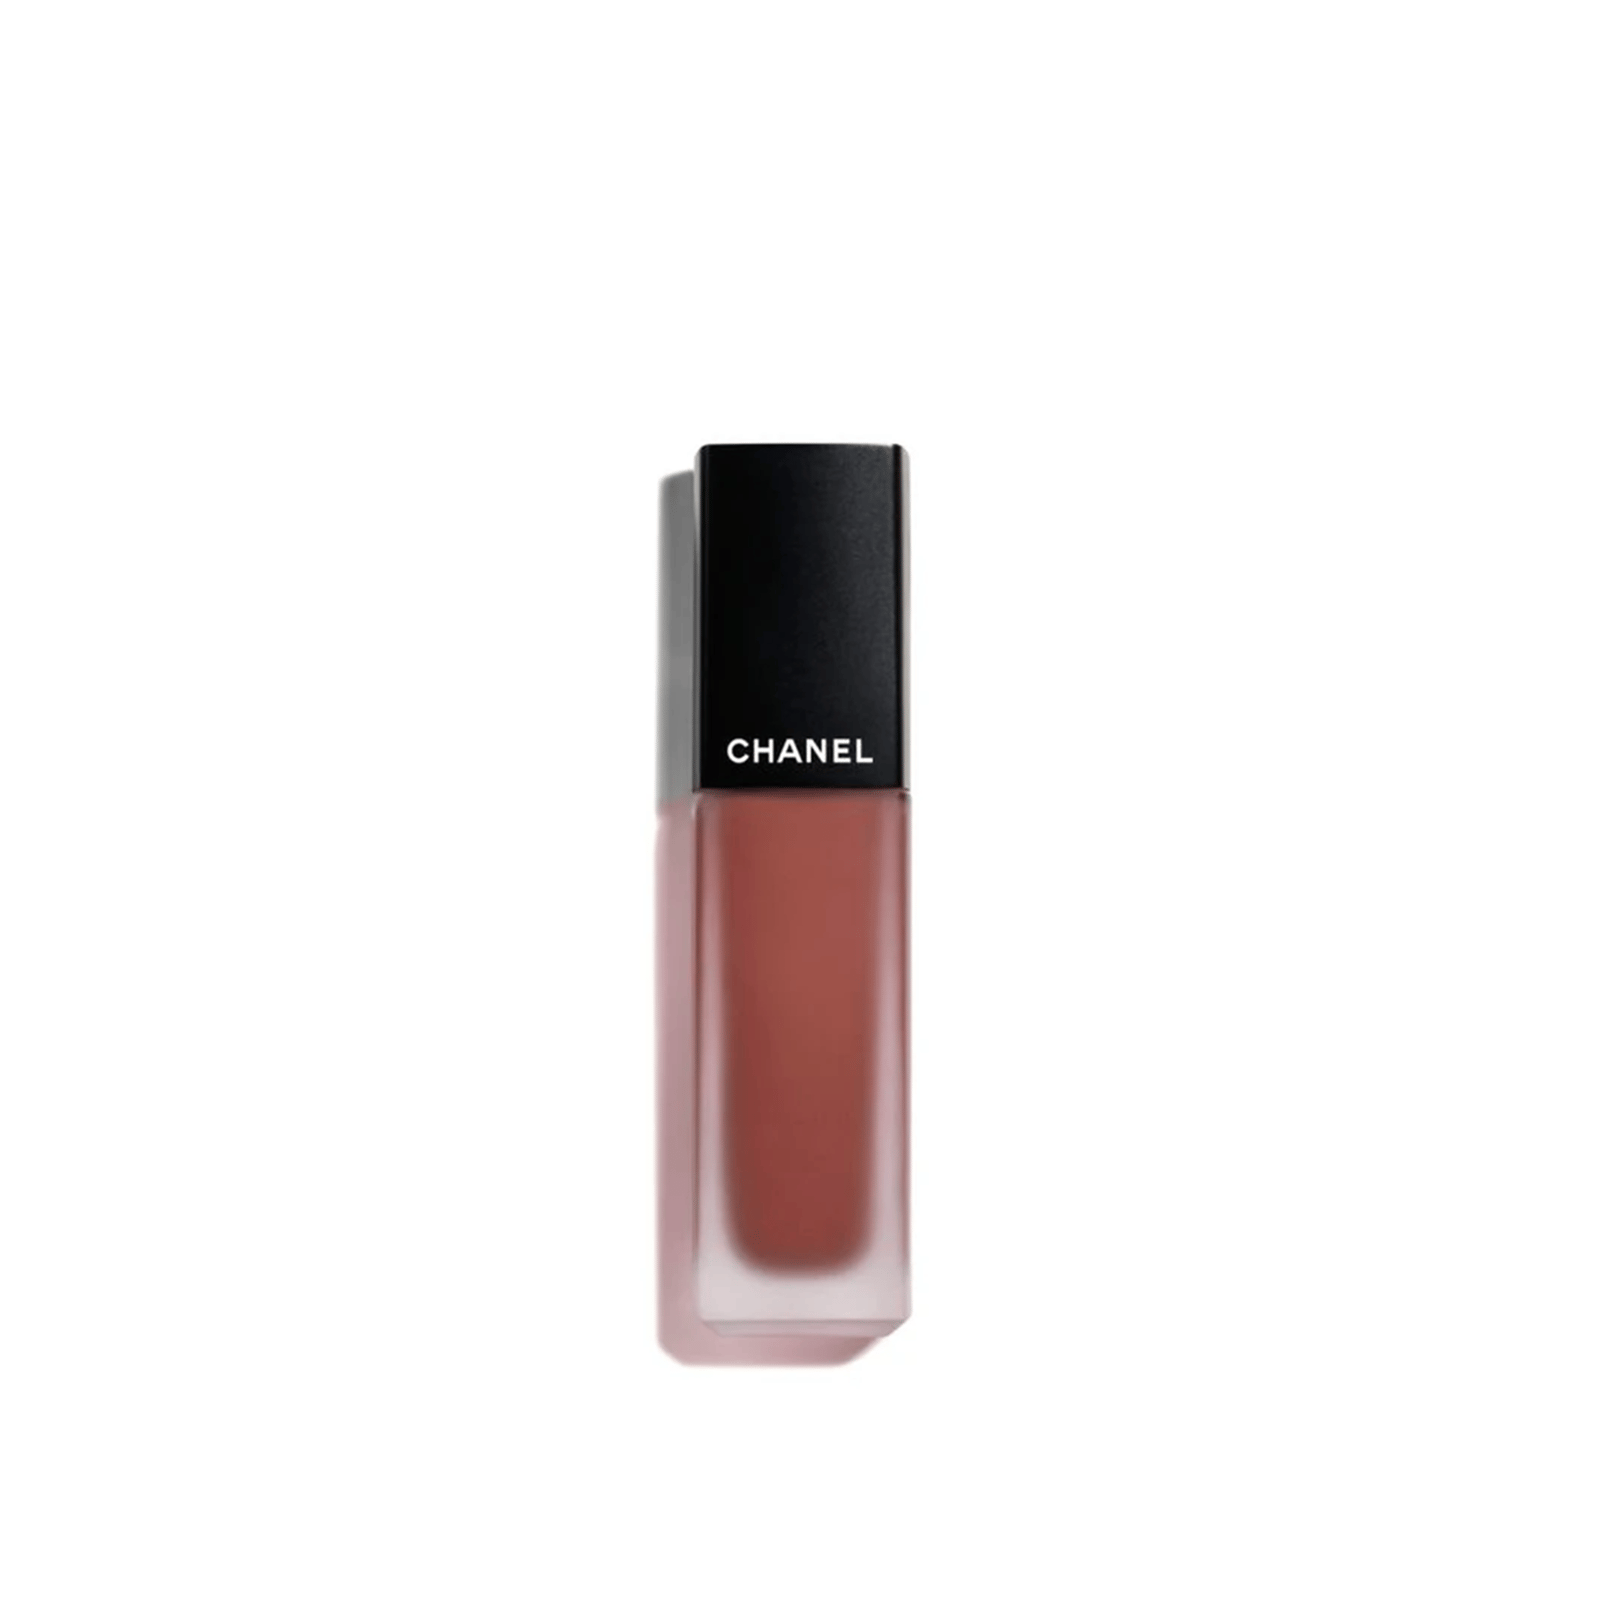 CHANEL Rouge Allure Ink Fusion Intense Matte Liquid Lip Colour 834 Ambiguïté 6ml (0.20floz)